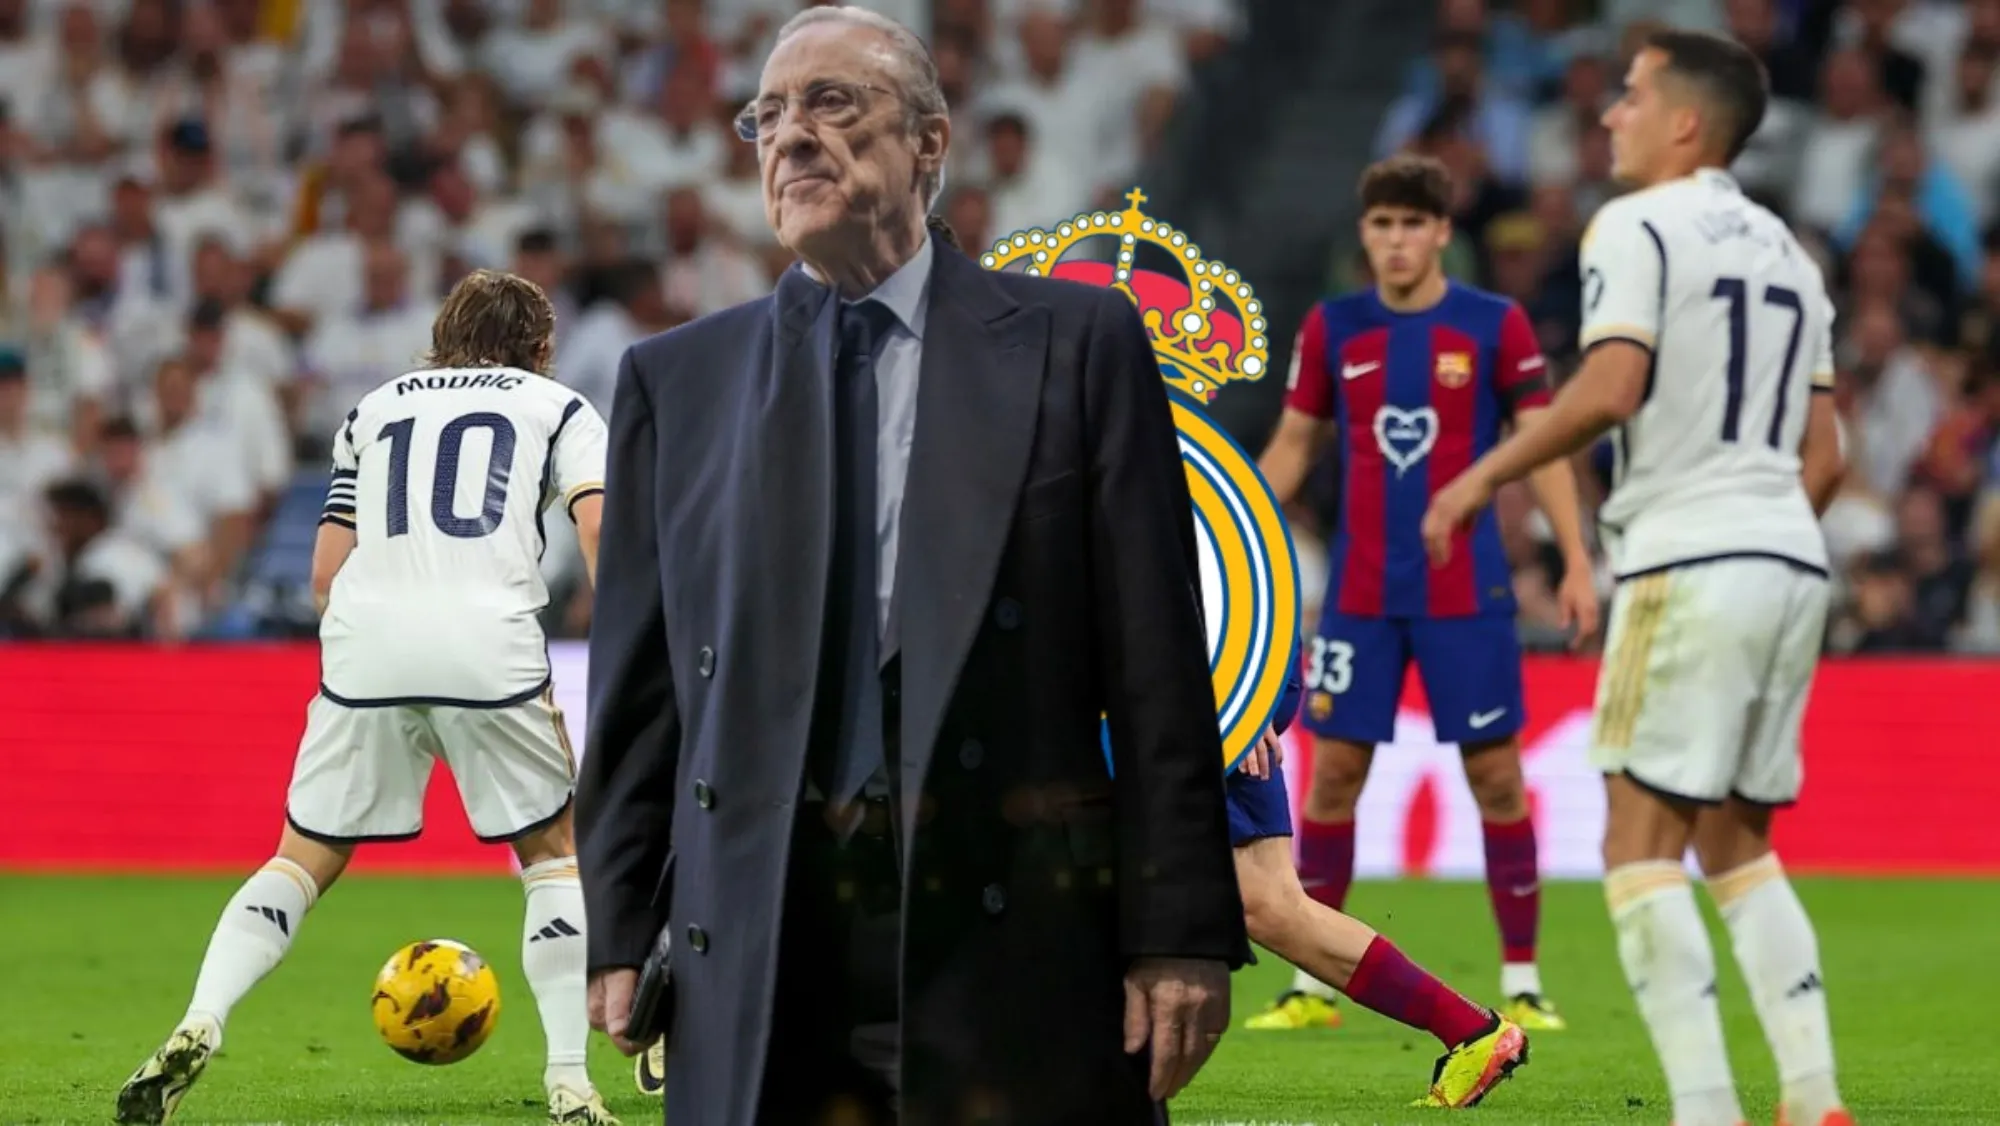 La reacción del Real Madrid tras su exhibición en el clásico: "Hay que firmarle..."